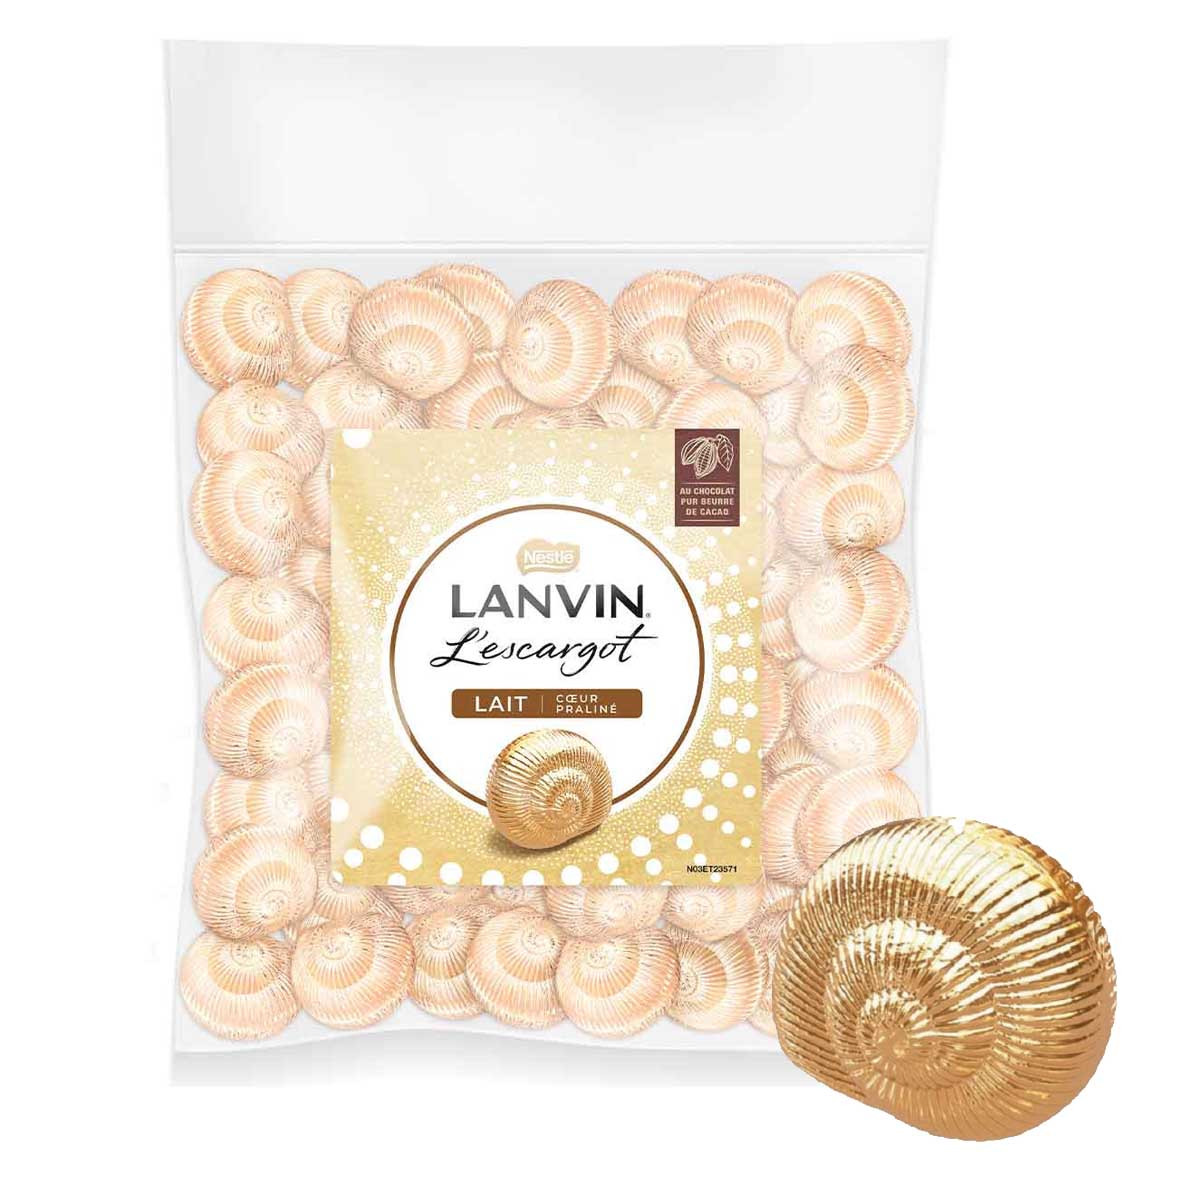 Escargots - Lanvin